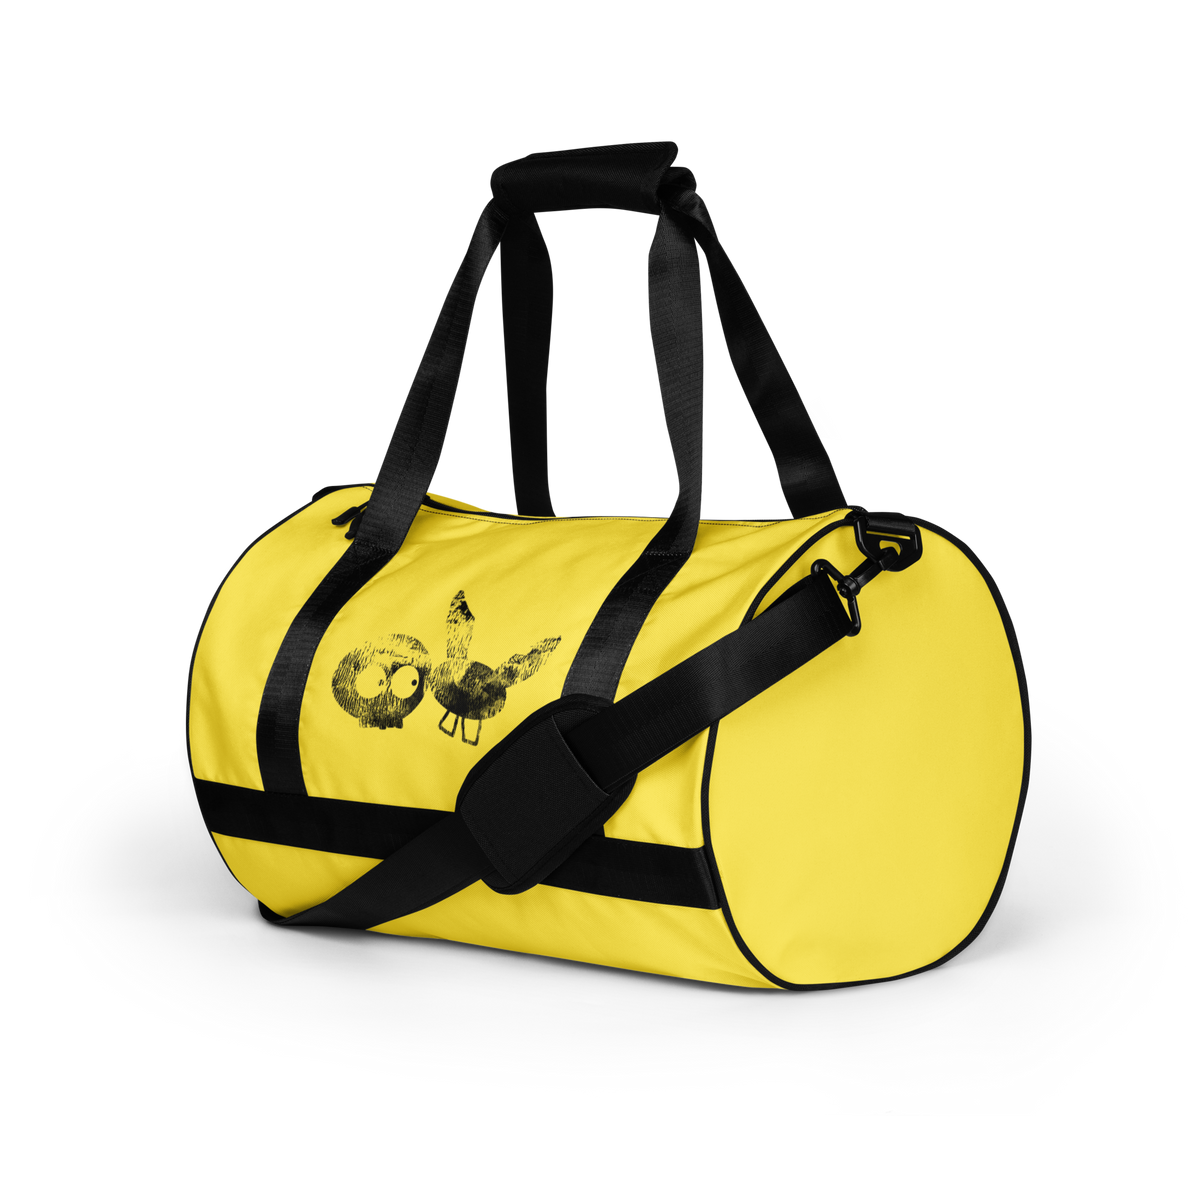 Yellow Super Sturdy mm Duffle Bag